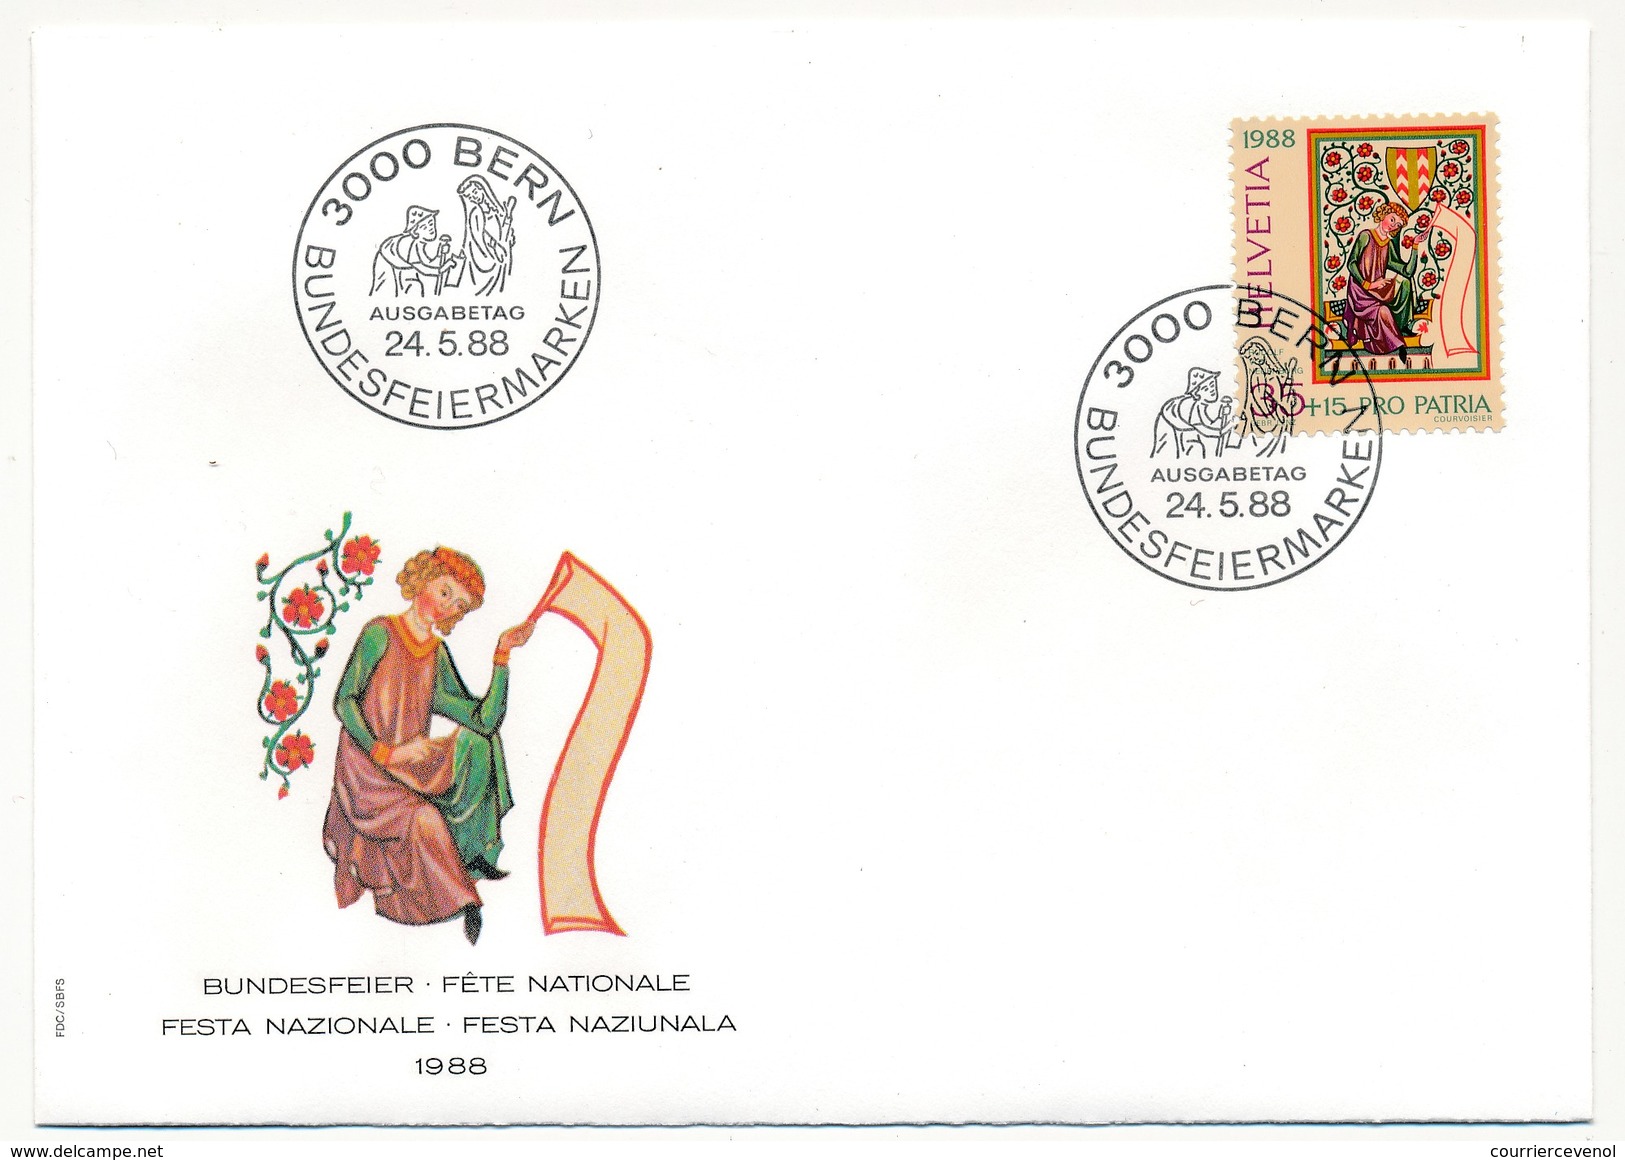 SUISSE - 5 Enveloppes FDC - Fête Nationale 1988 (Pro Patria) - BERN 24/5/1988 - Officials